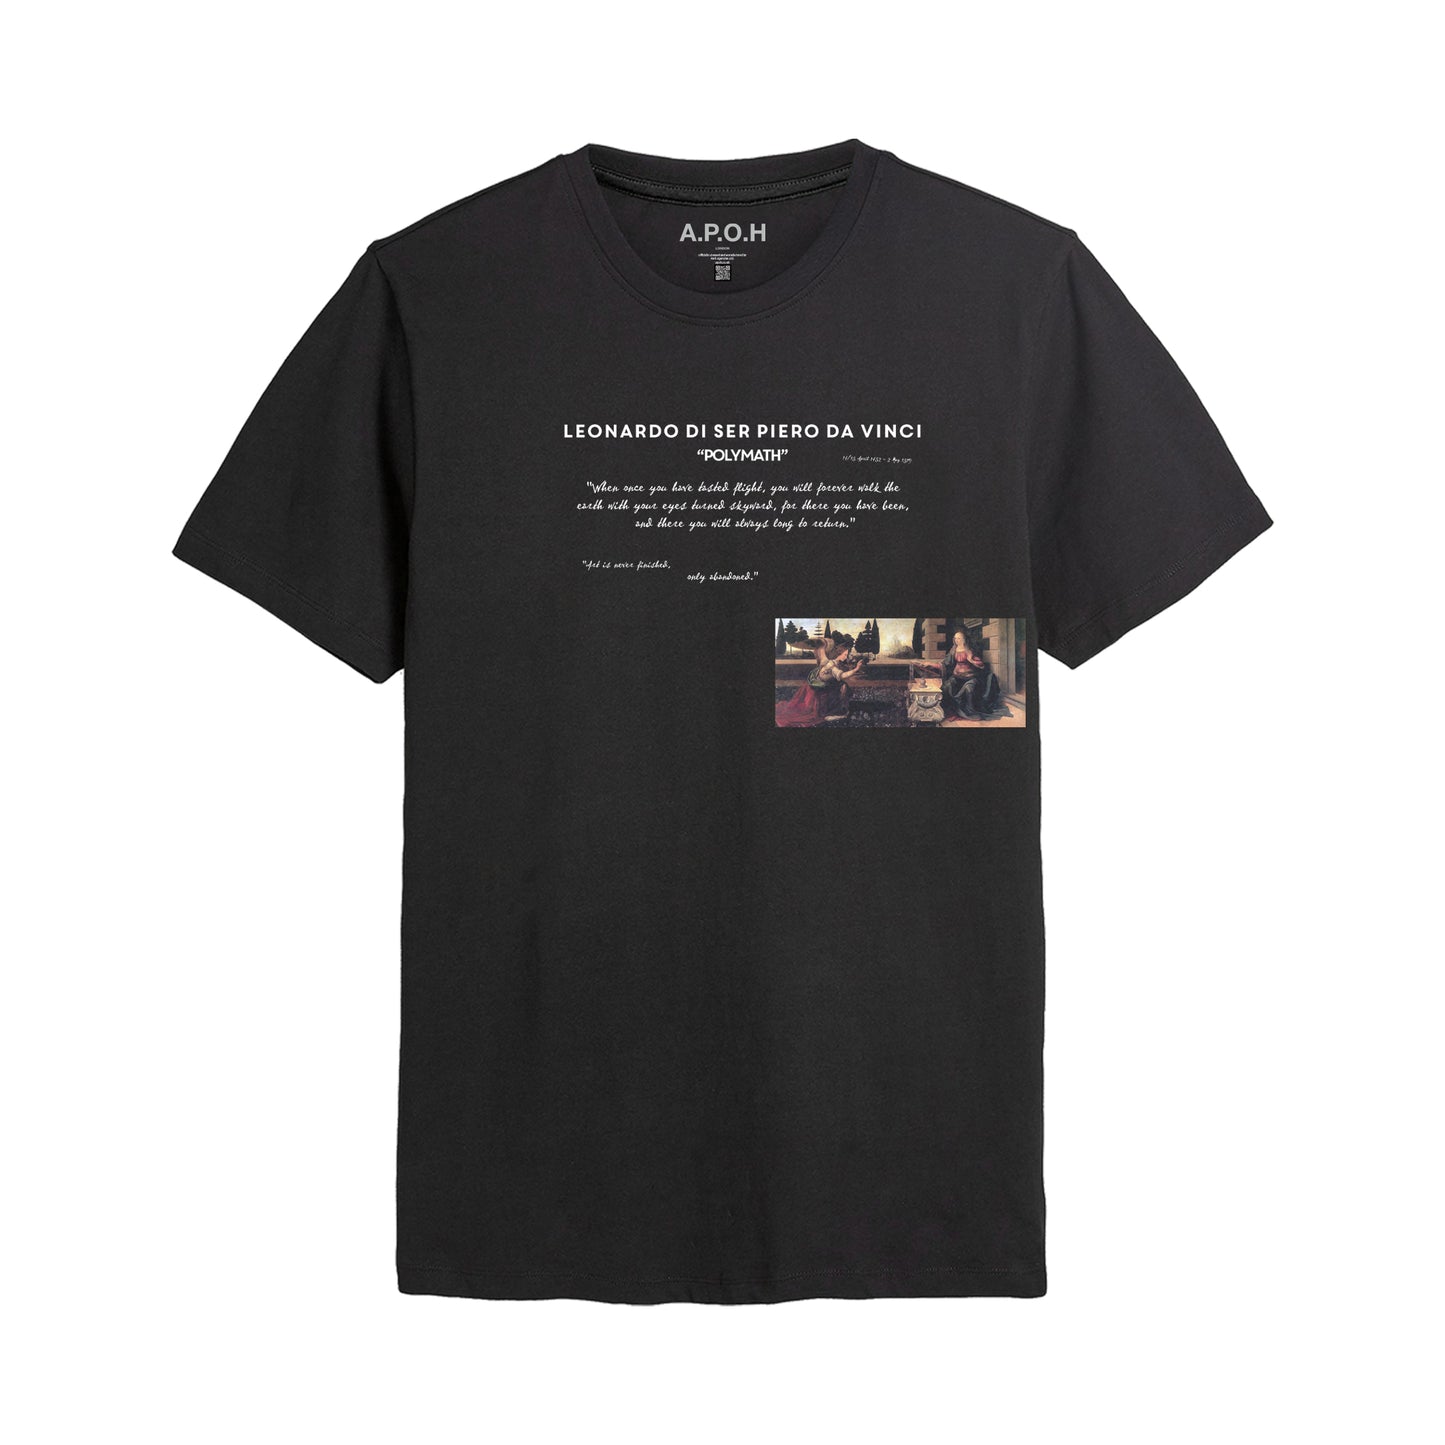 Da Vinci's Polymath T-shirt